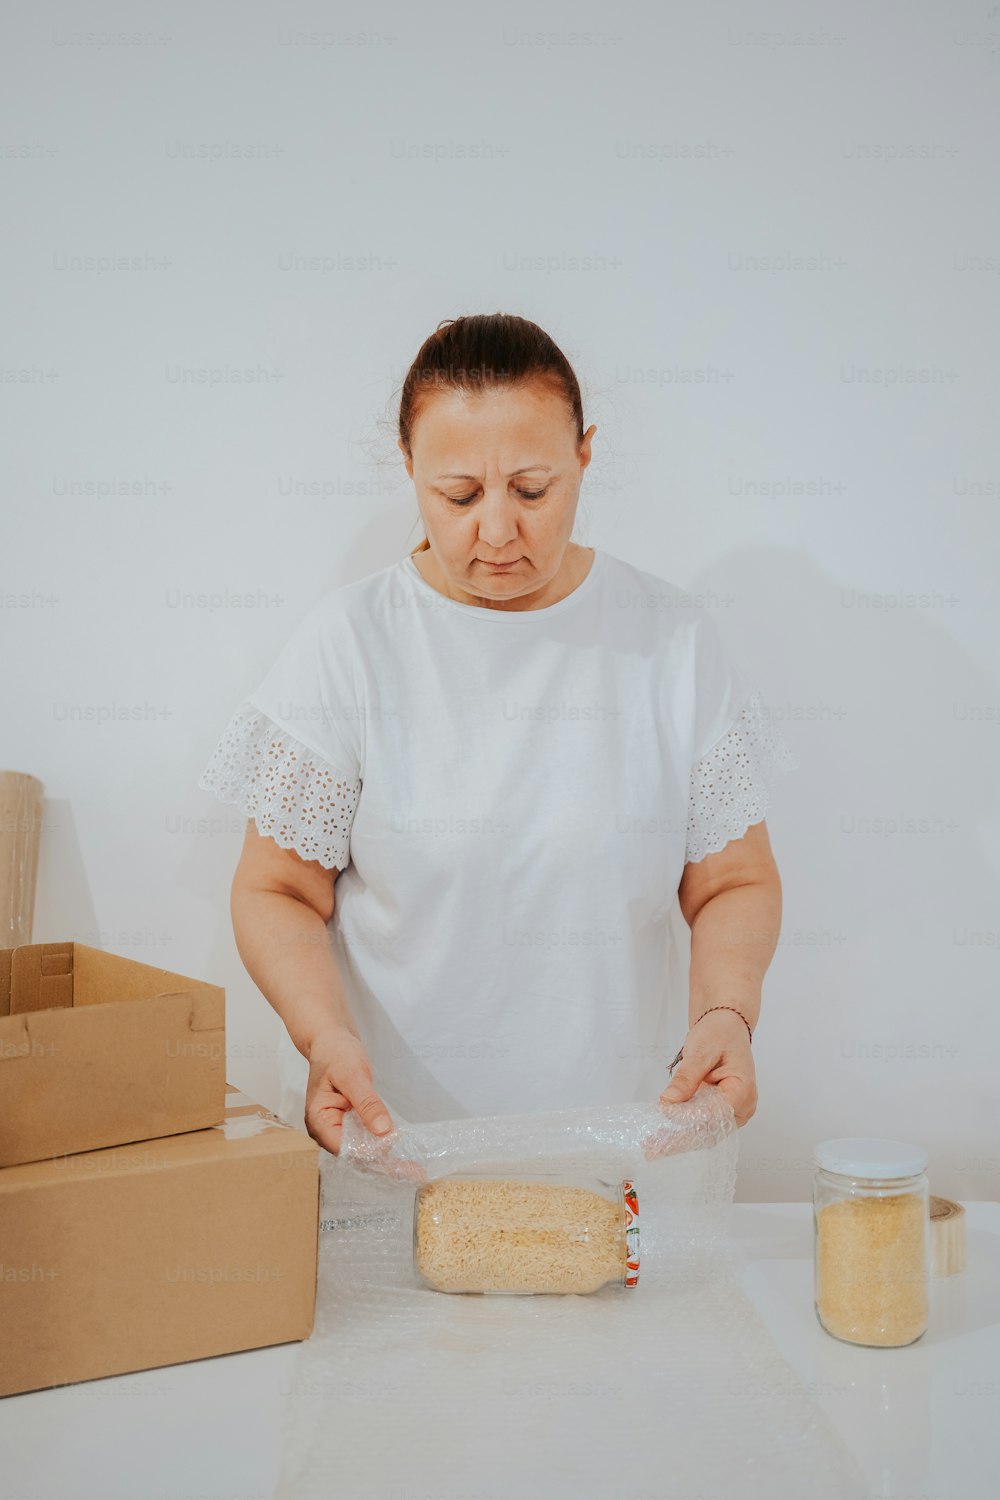 Eine Frau im weißen Hemd backt einen Kuchen